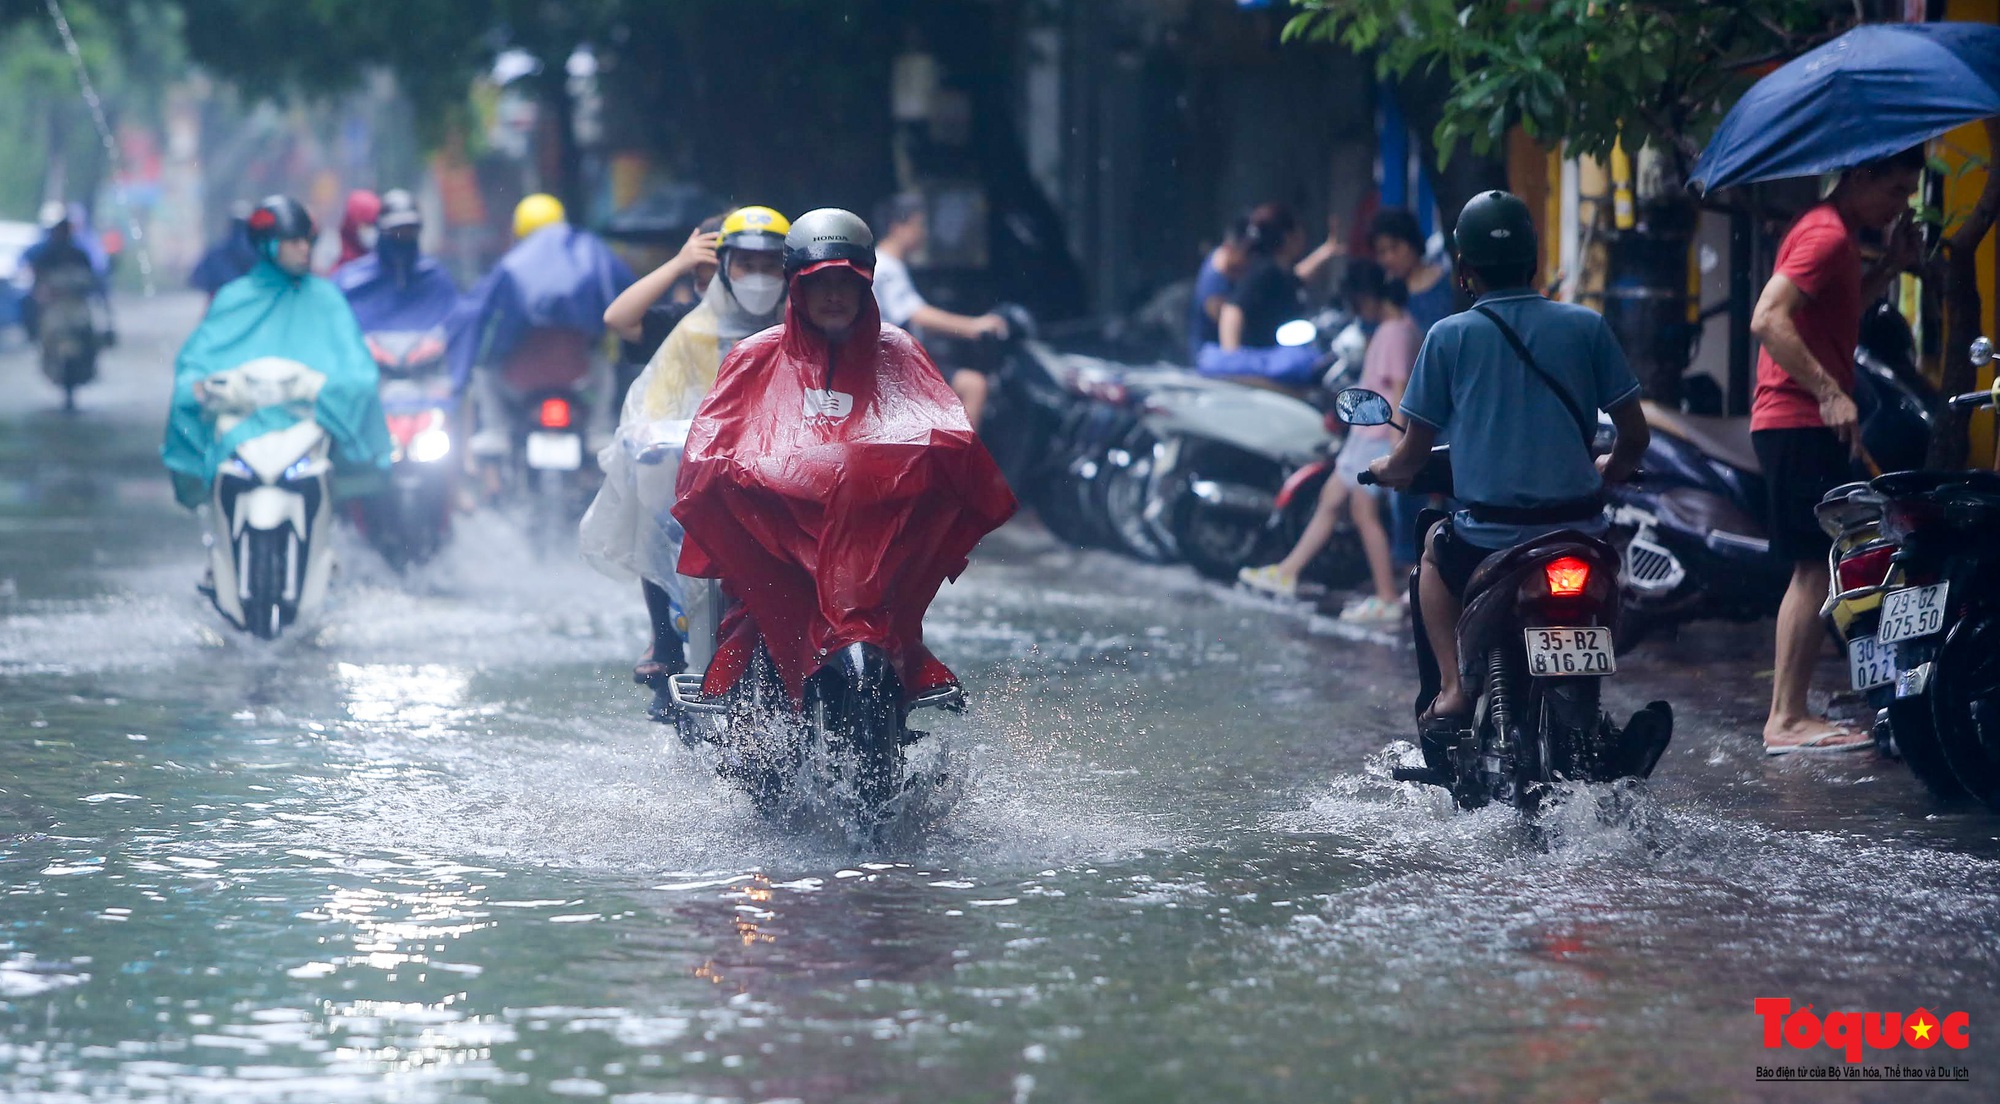 Sau cơn &quot;mưa vàng&quot; giải nhiệt, nhiều đường thủ đô ngập sâu trong nước - Ảnh 6.